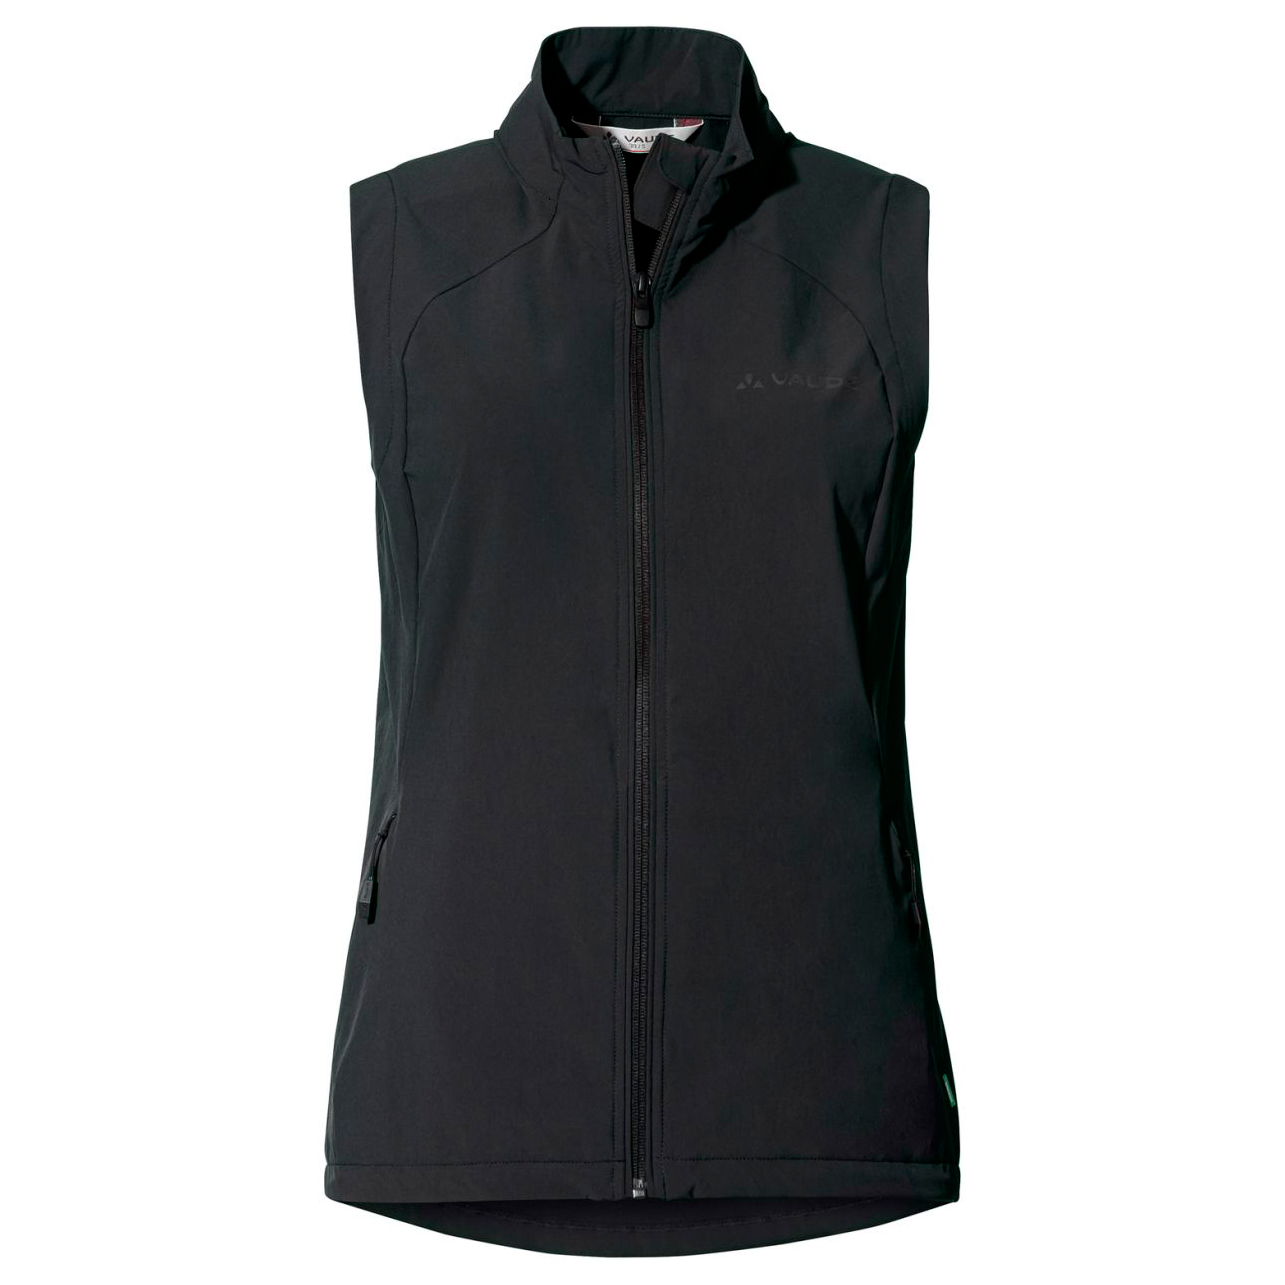 Велосипедный жилет Vaude Women's Yaras Vest, черный жилет siksilk cropped vest черный